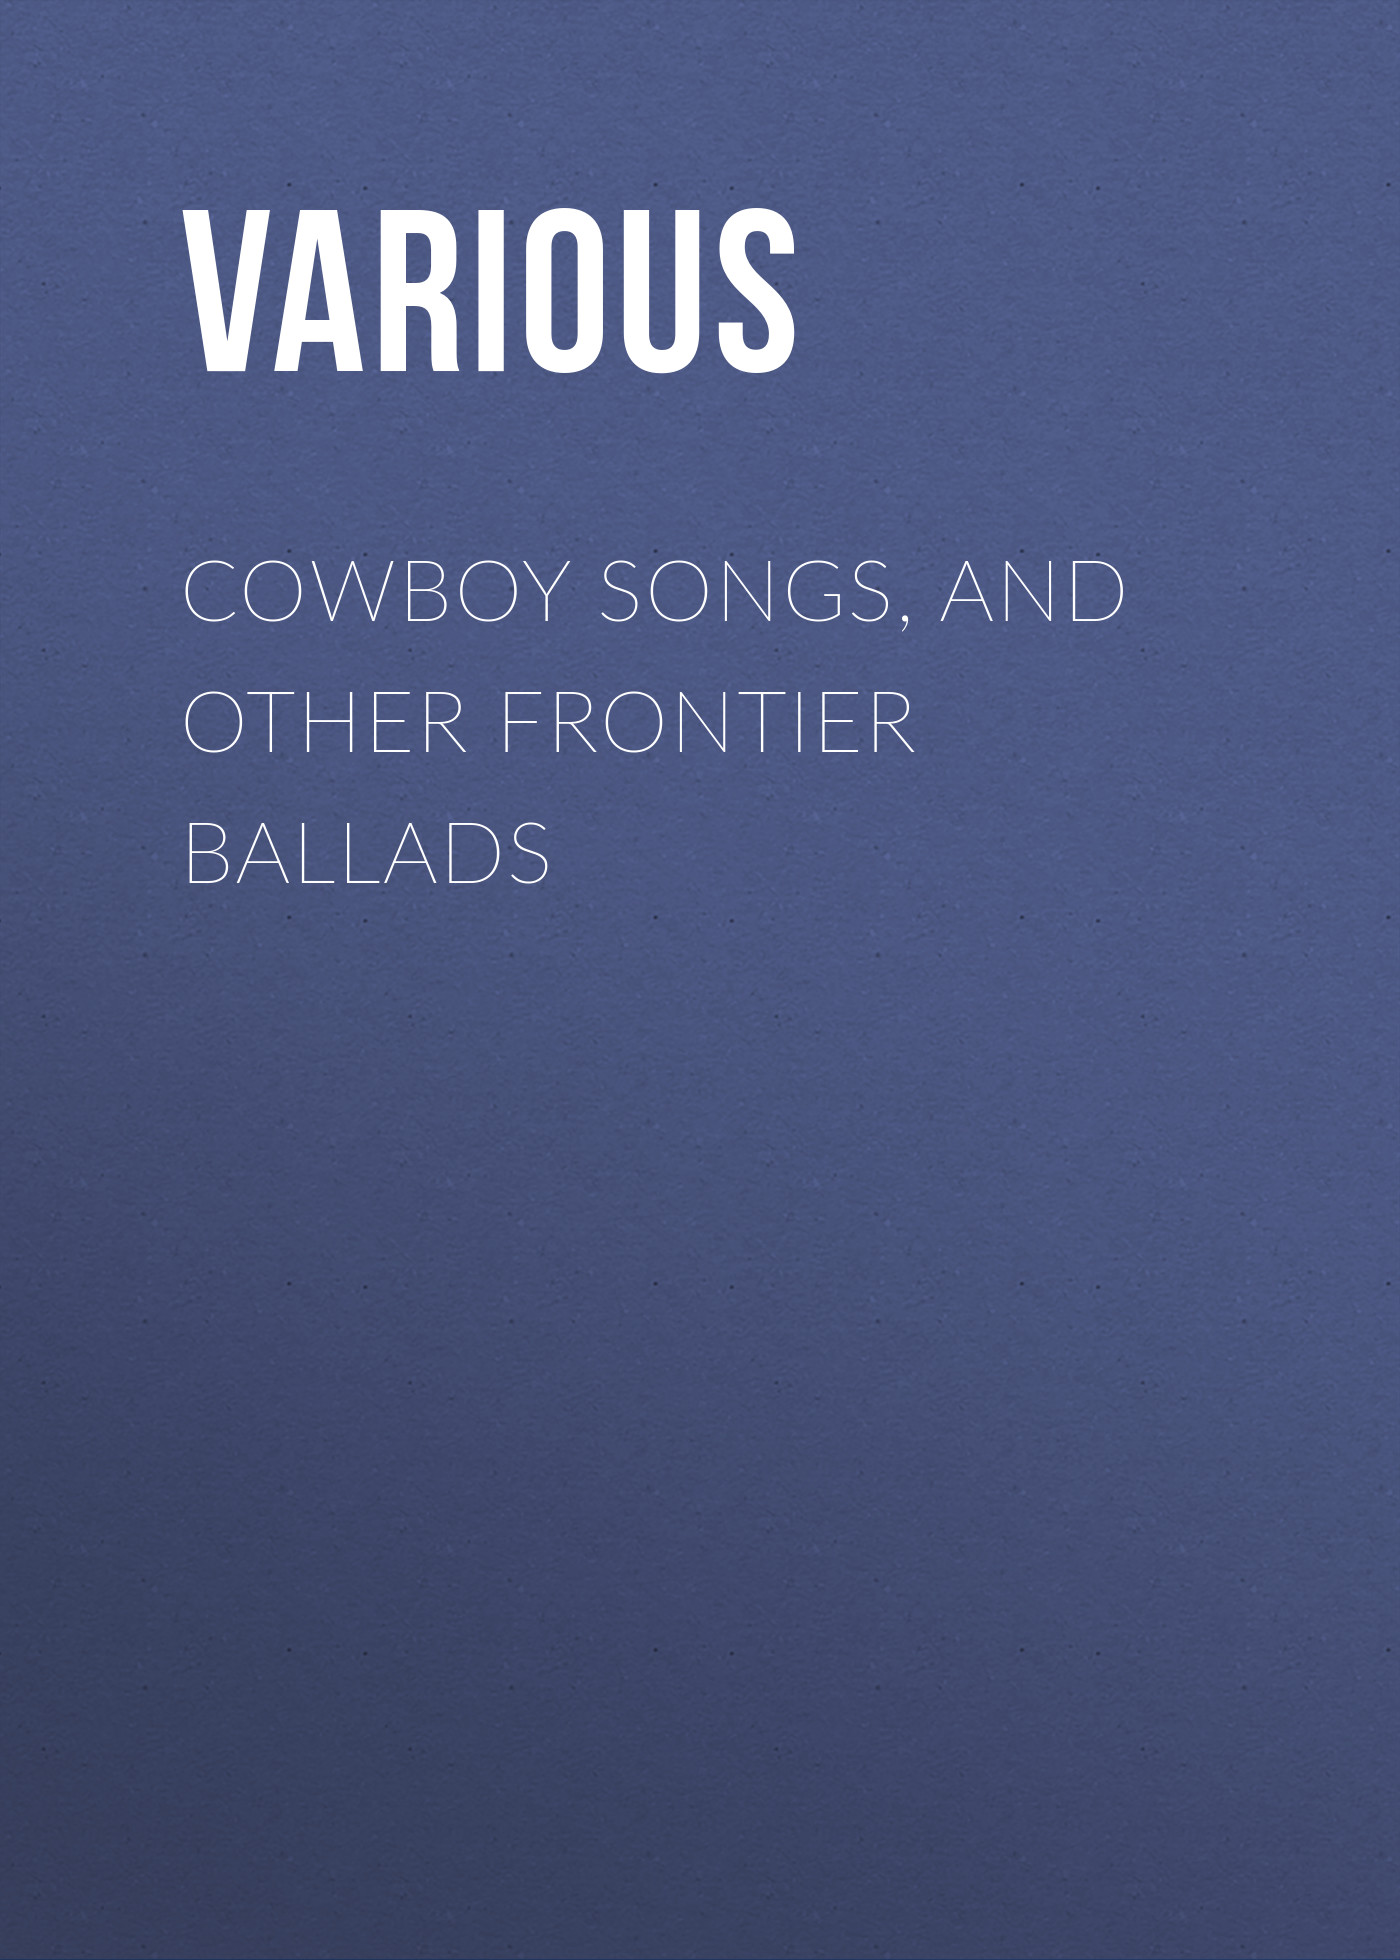 Книга Cowboy Songs, and Other Frontier Ballads из серии , созданная  Various, может относится к жанру Зарубежные стихи, Зарубежная прикладная и научно-популярная литература, Поэзия, Музыка, балет, Зарубежная старинная литература, Зарубежная классика. Стоимость электронной книги Cowboy Songs, and Other Frontier Ballads с идентификатором 35495975 составляет 0 руб.